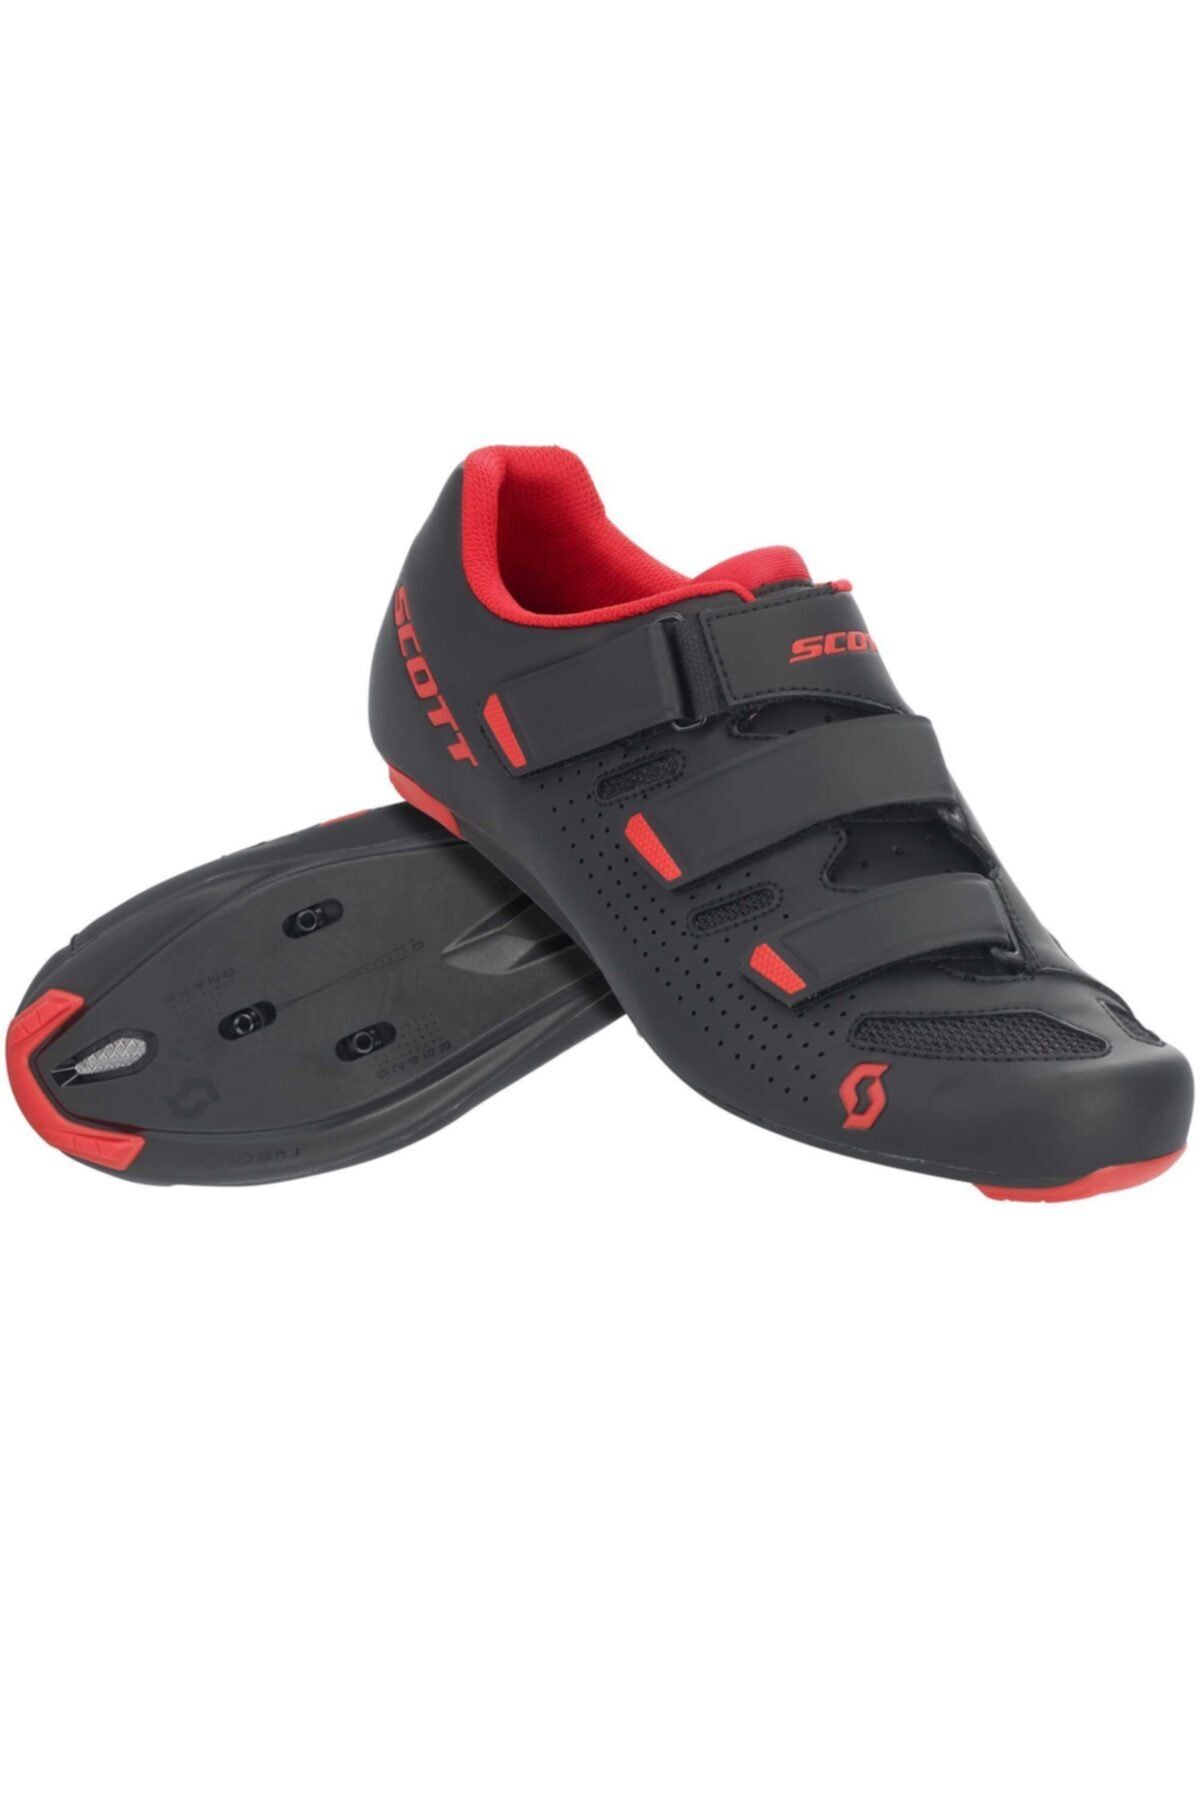 SCOTT Comp Yol Ayakkabısı Siyah-kırmızı 43